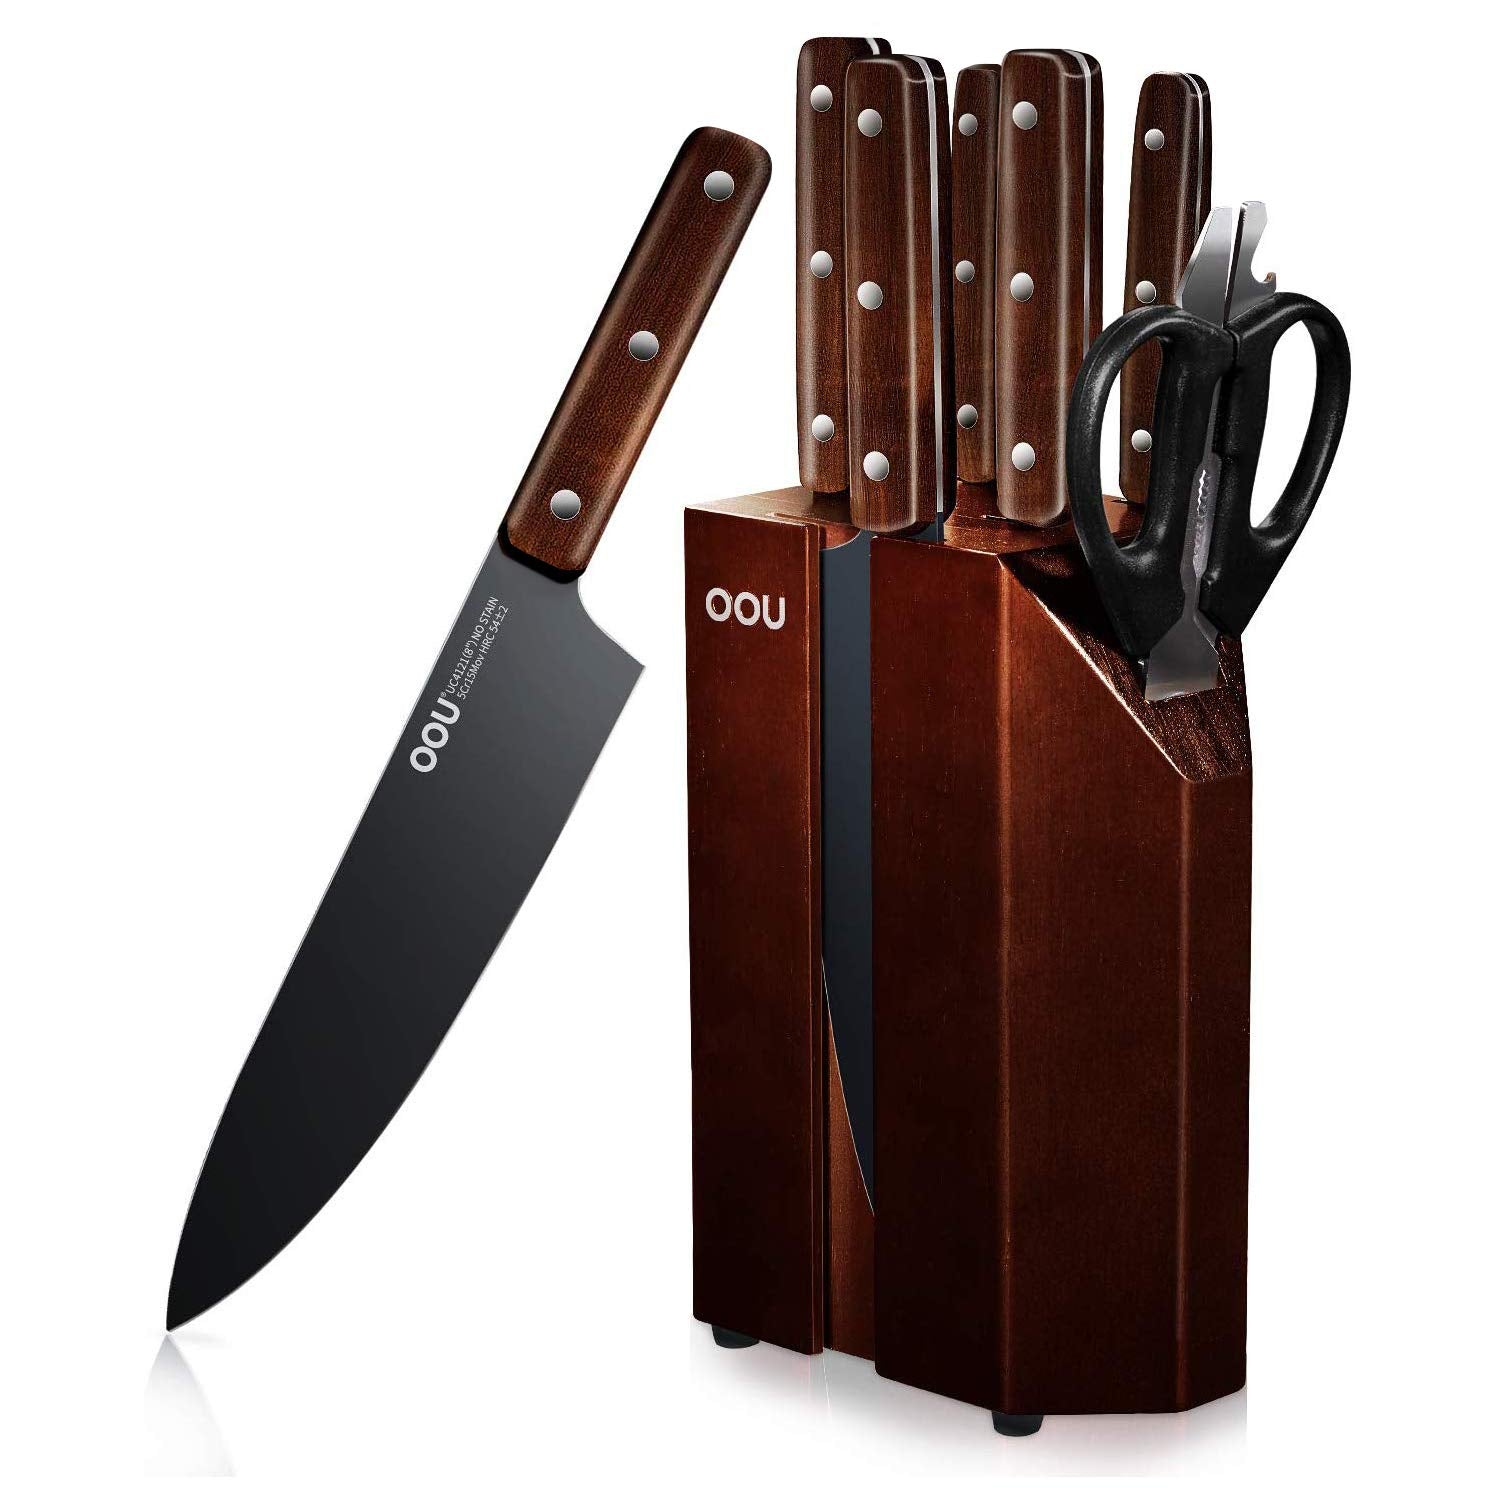 Buy Kitchen Knife Oou online